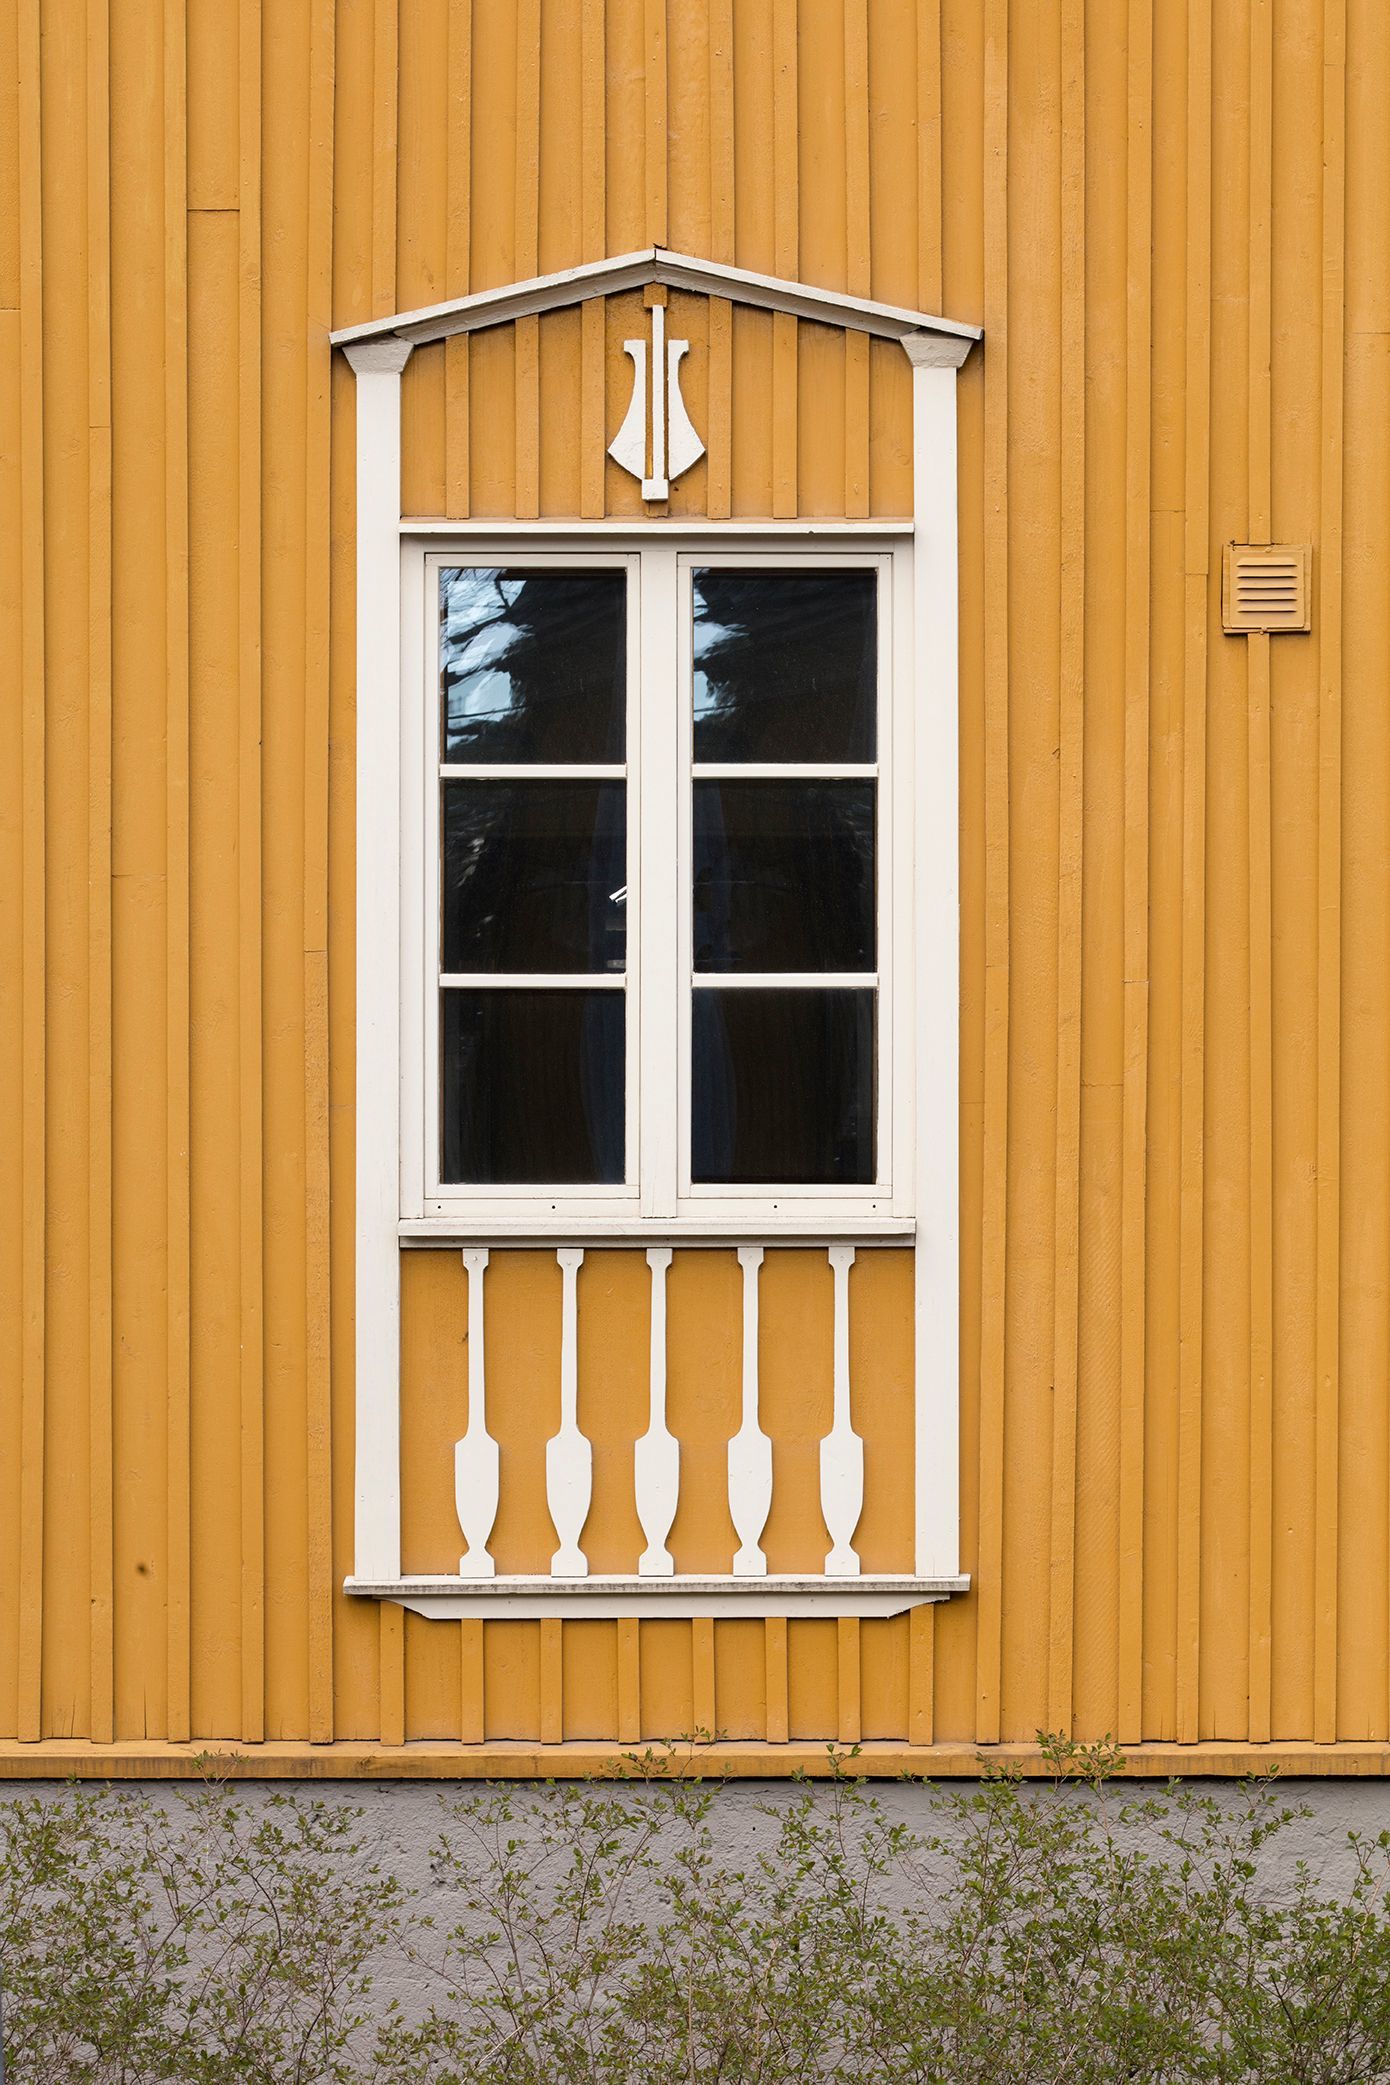 Yksityiskohta keltaisen puutalon ikkunan puitteista ja koristeluista Puu-Käpylässä